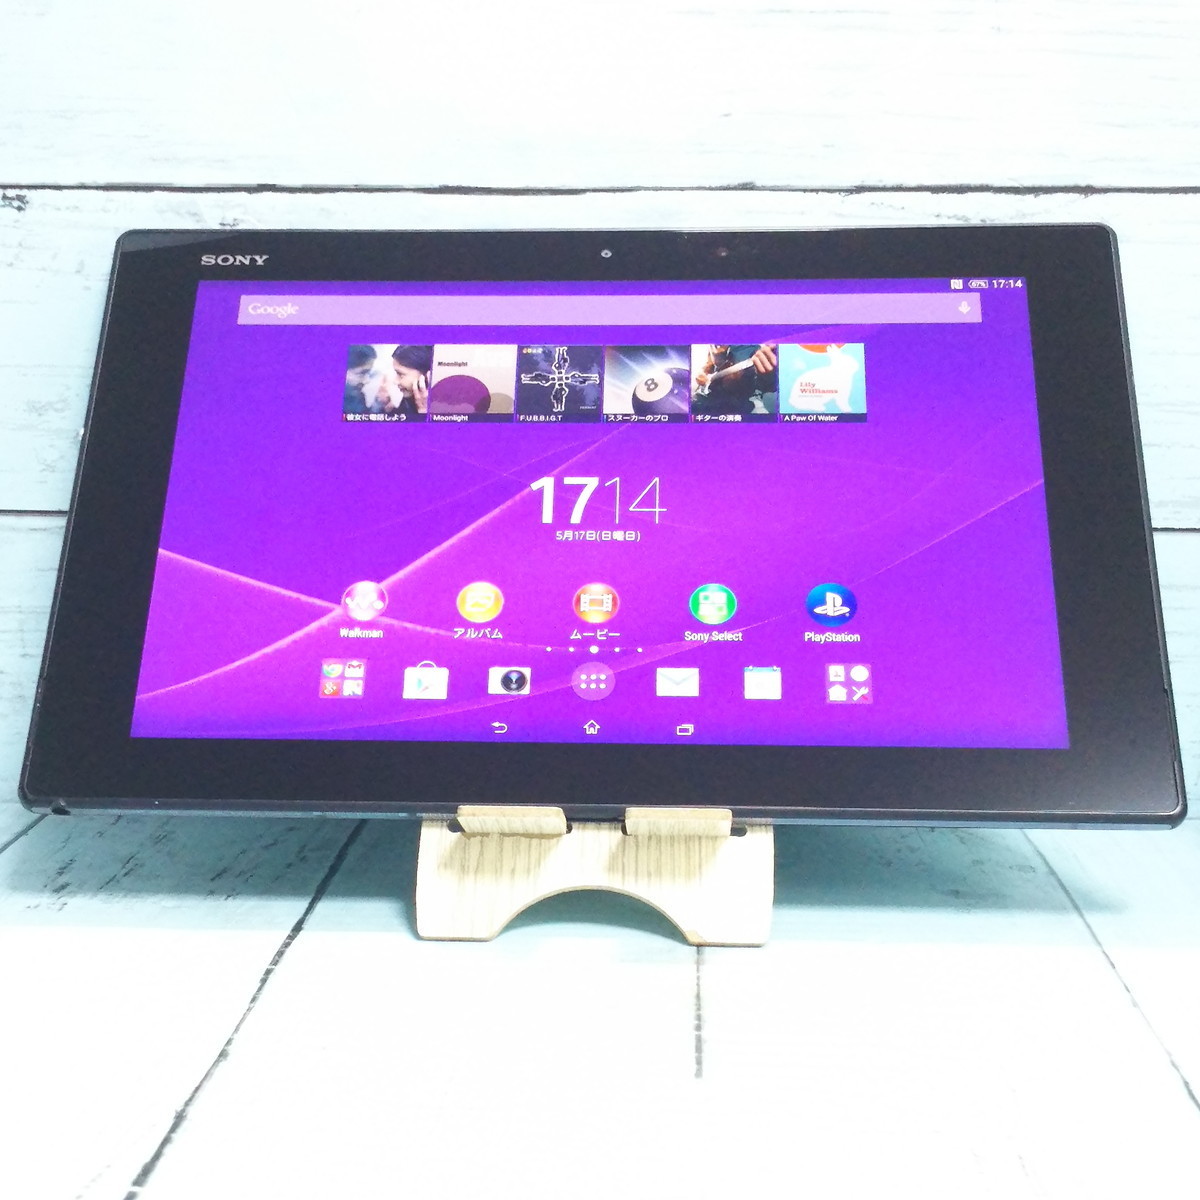 税込) SONY Xperia 483340 本体 SGP512 Wi-Fi Tablet Android Z2 本体